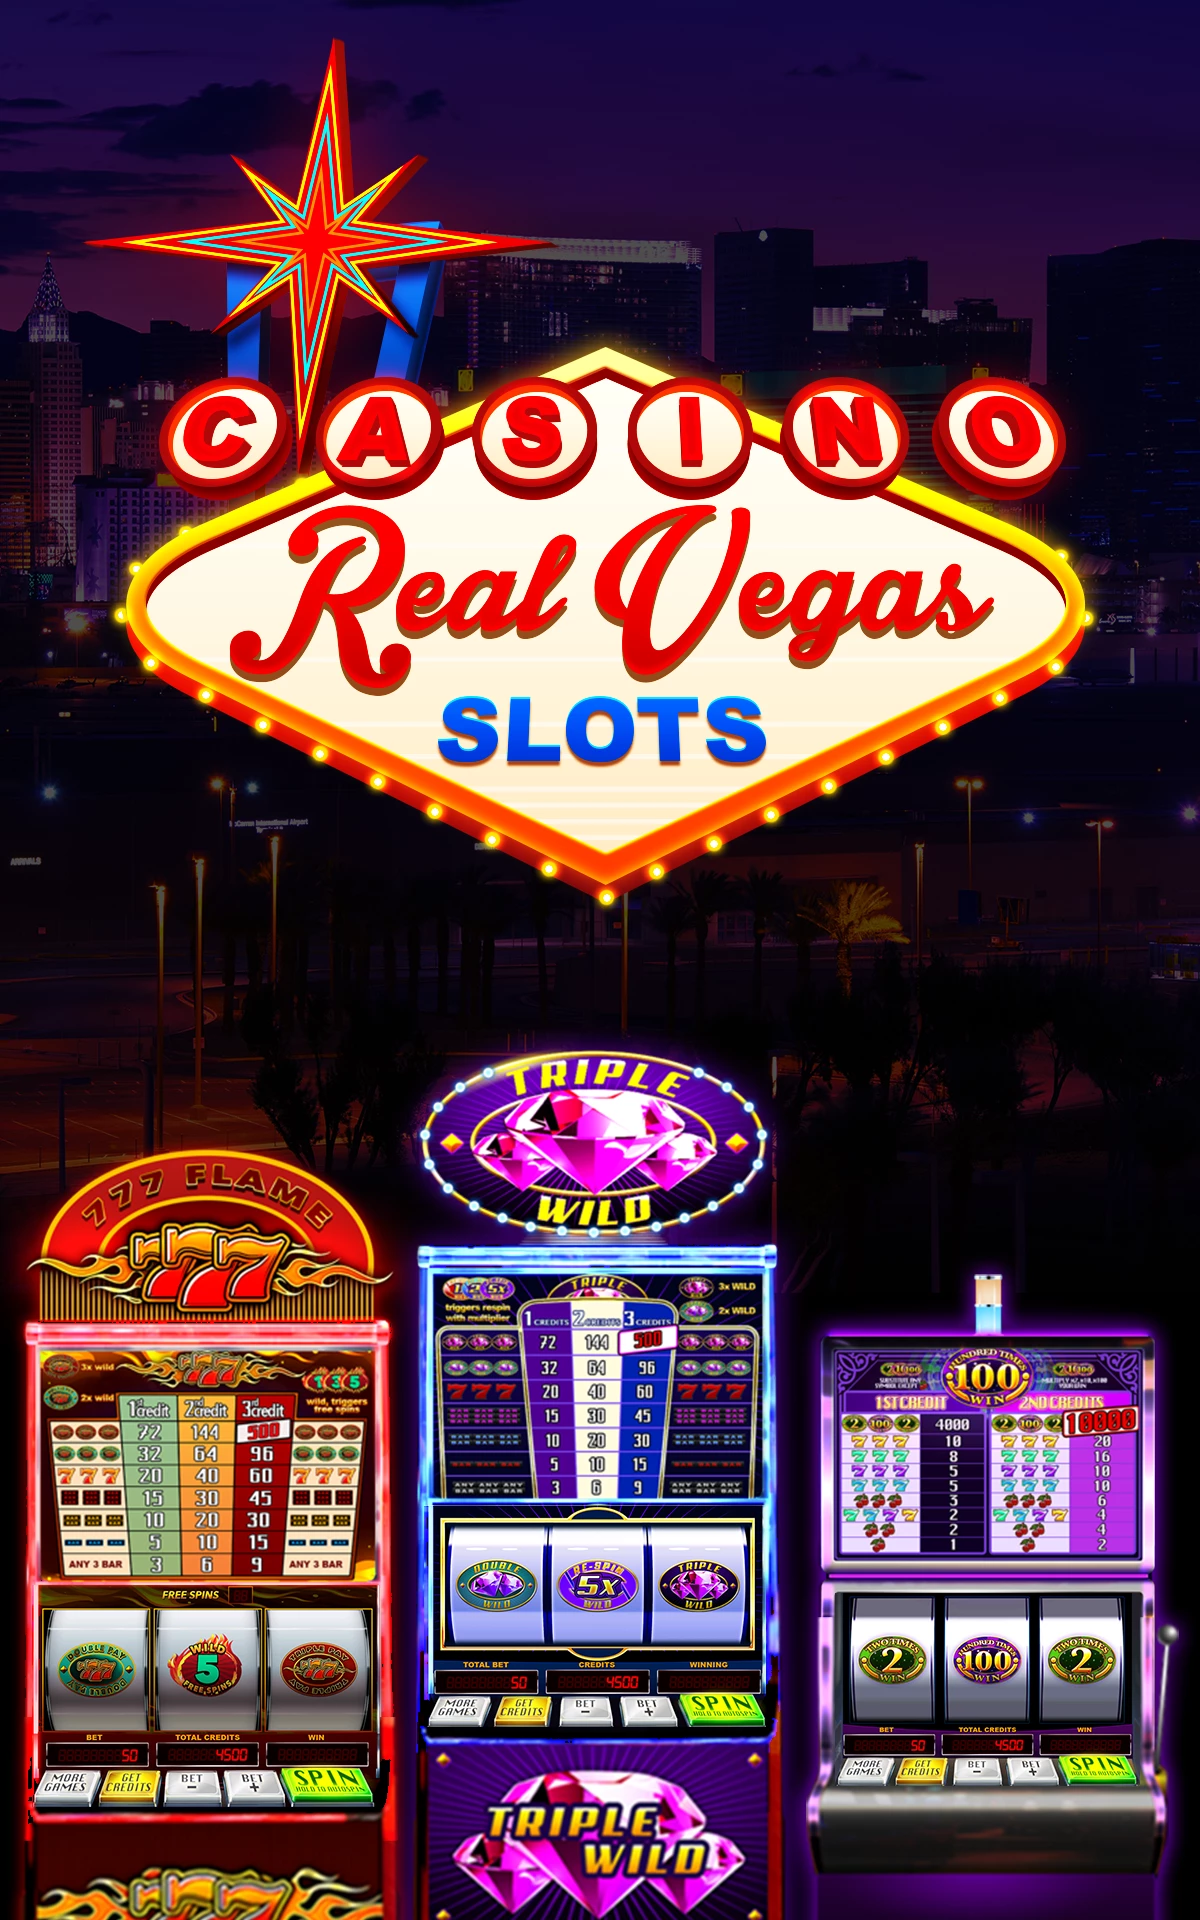 Slots Of Vegas Similar Games